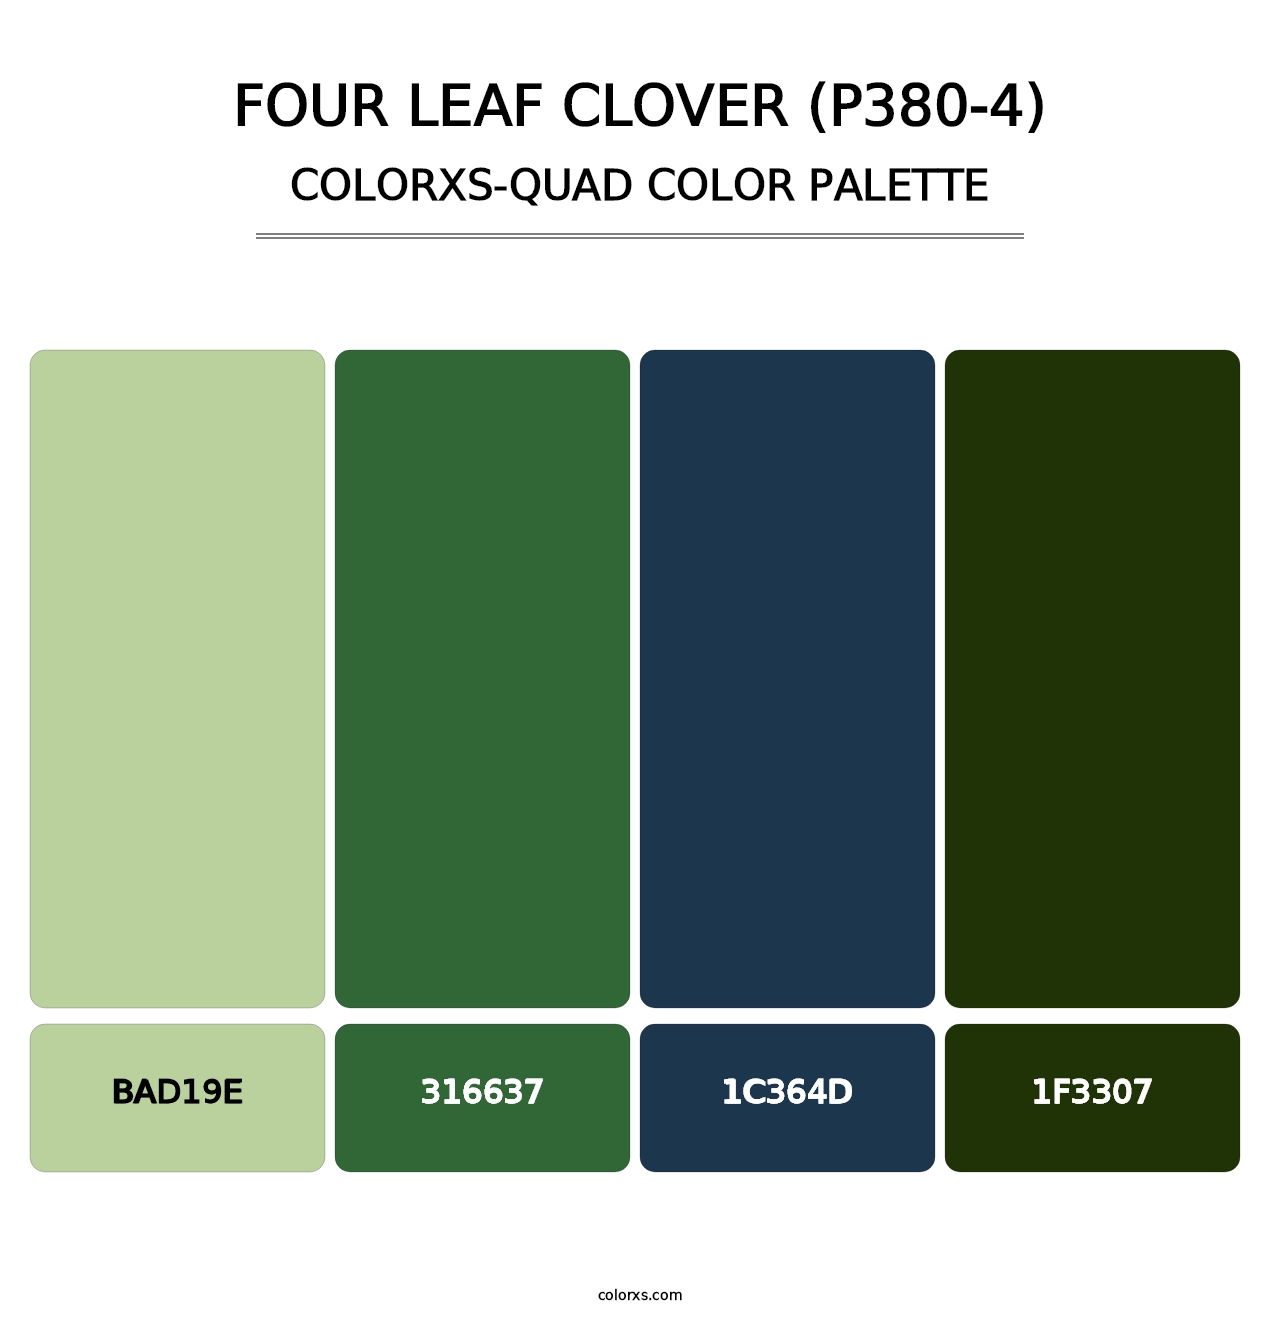 Four Leaf Clover (P380-4) - Colorxs Quad Palette